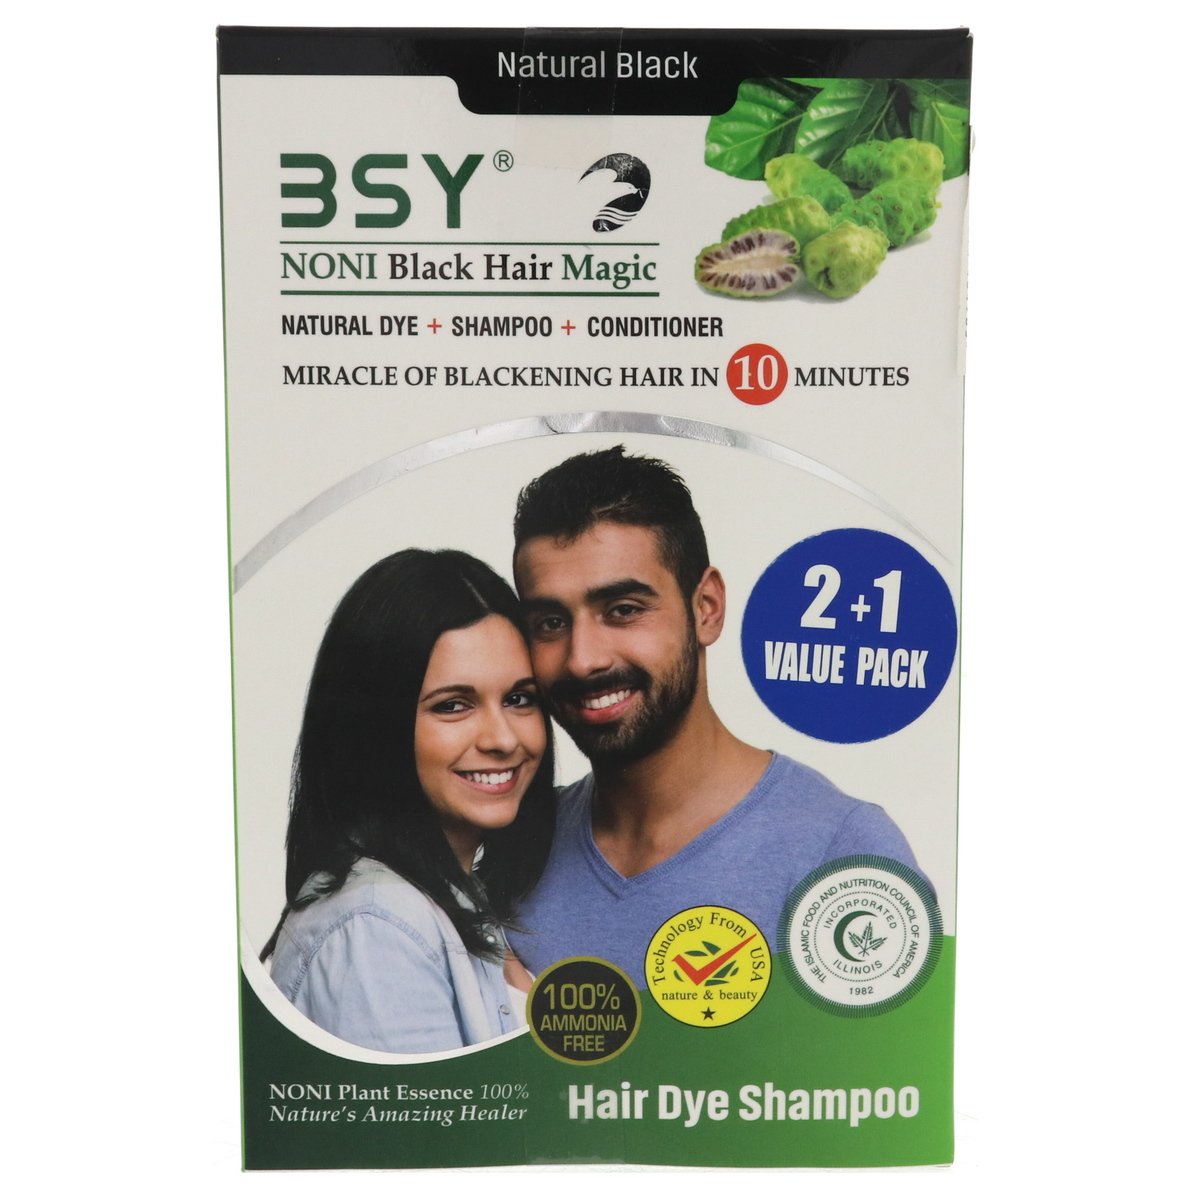 Bsy Noni Black Hair Magic Hair Dye Shampoo 3 x 20ml